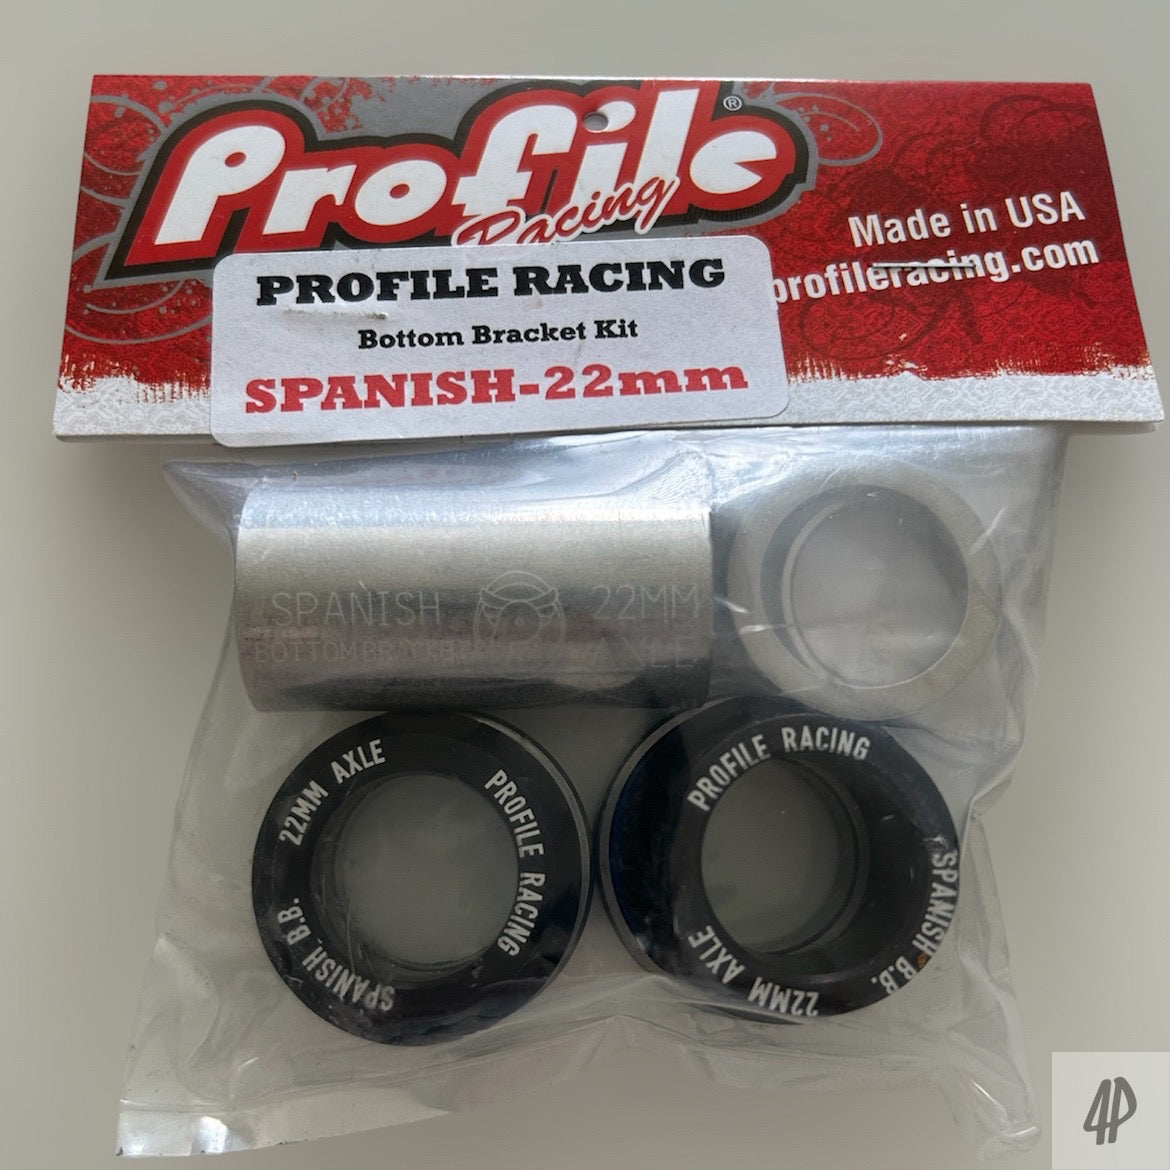 Profile Racing Spanish Innenlager / Bottom Bracket 22mm Black